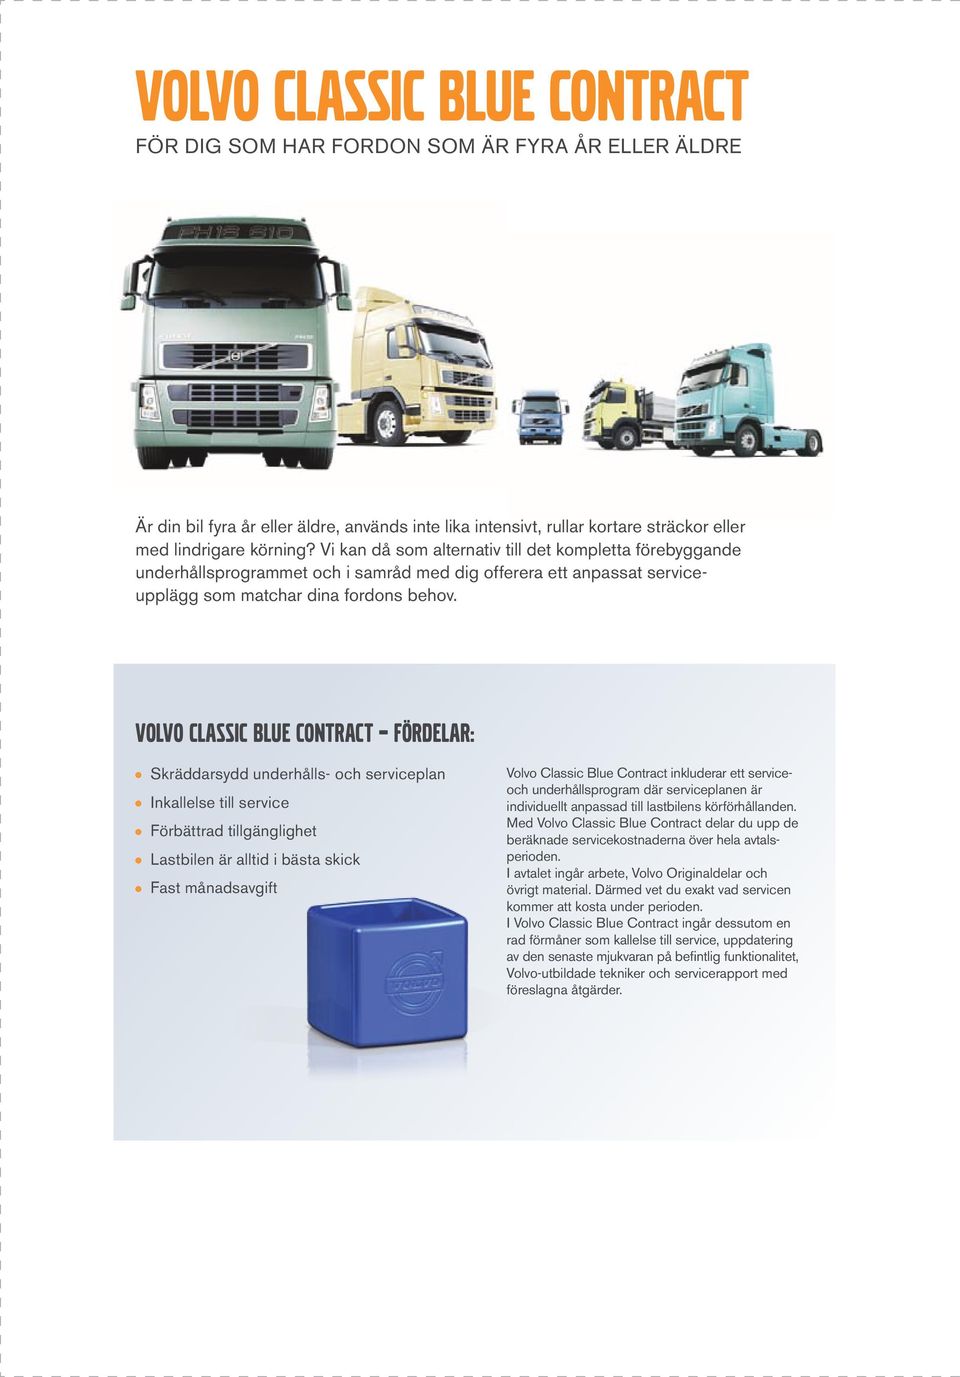 Volvo Classic Blue Contract fördelar: Skräddarsydd underhålls- och serviceplan Inkallelse till service Förbättrad tillgänglighet Lastbilen är alltid i bästa skick Fast månadsavgift Volvo Classic Blue